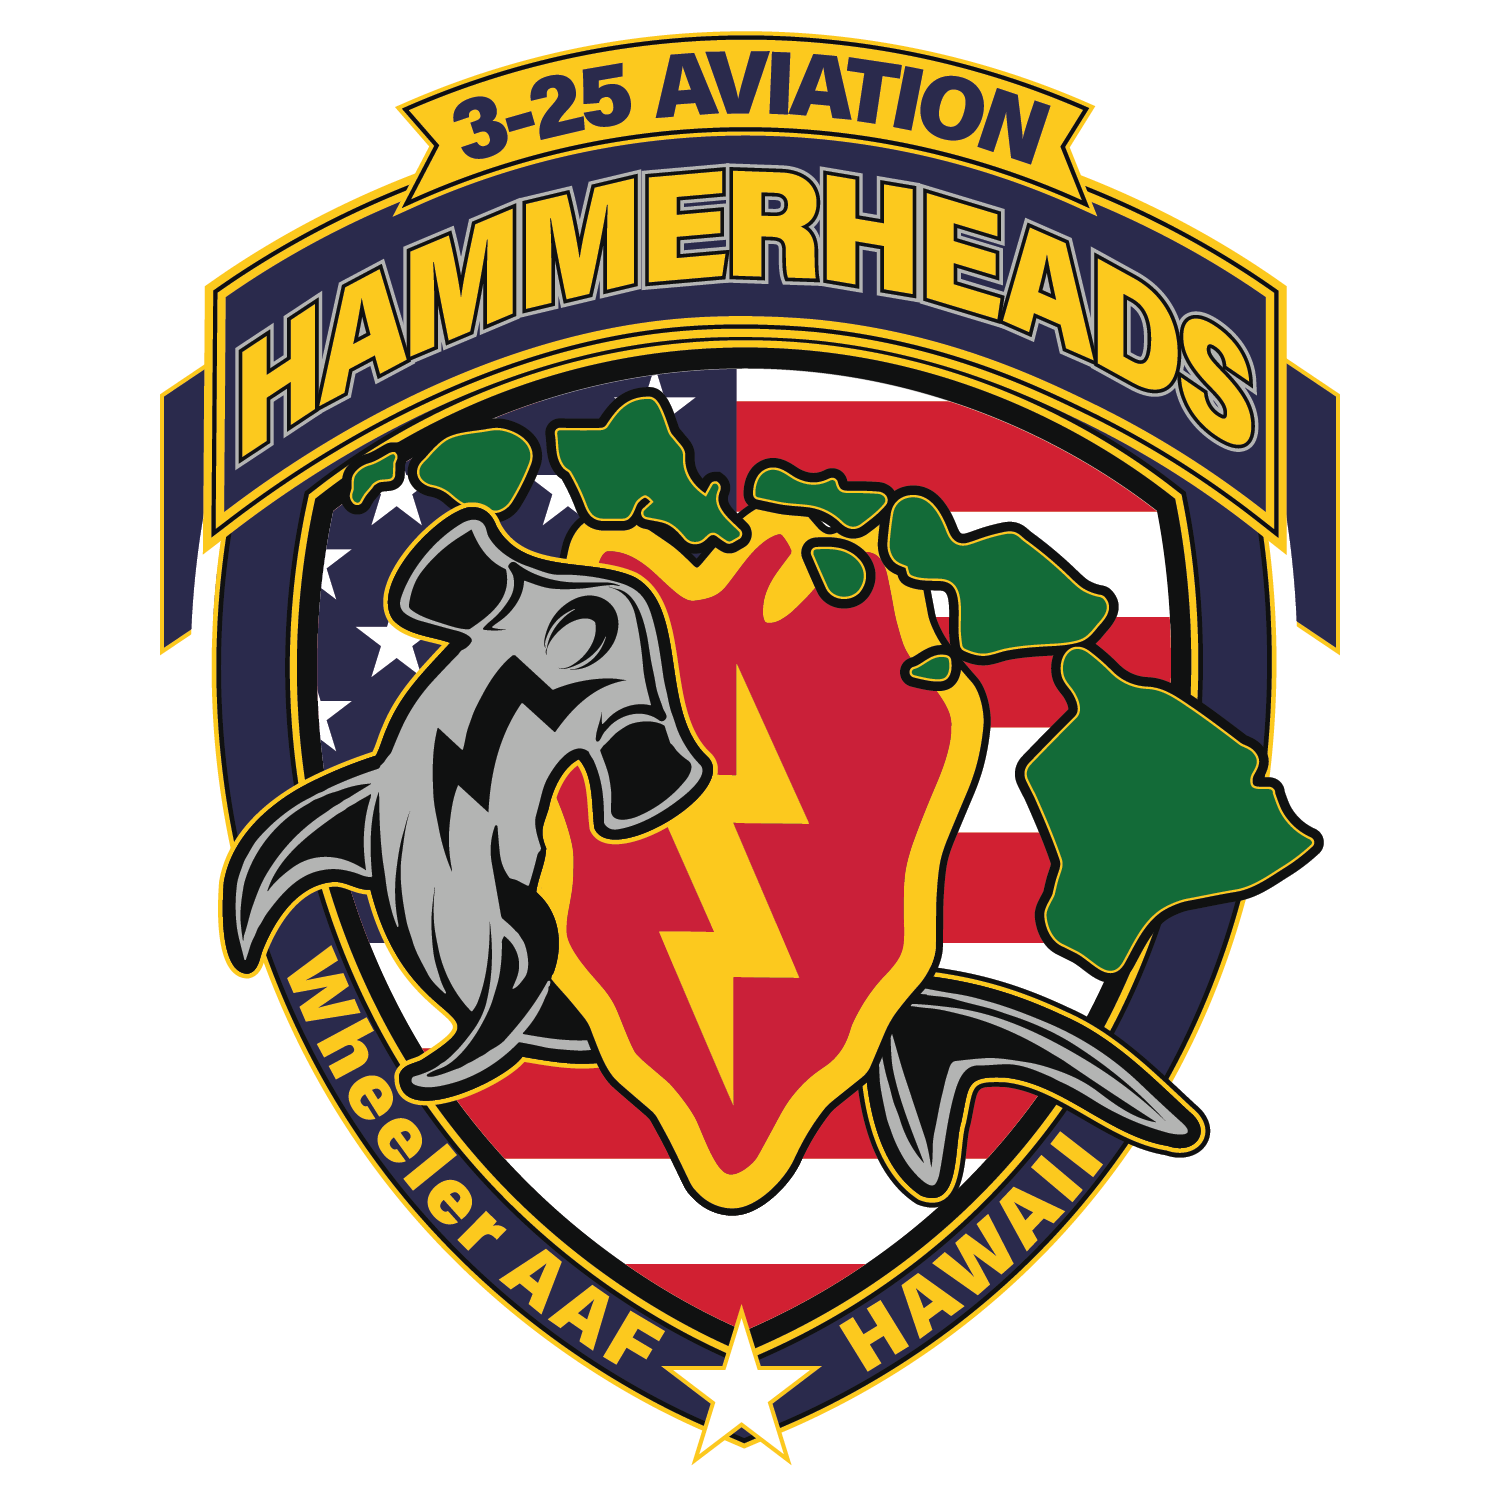 3-25 AVN REG "Hammerheads"